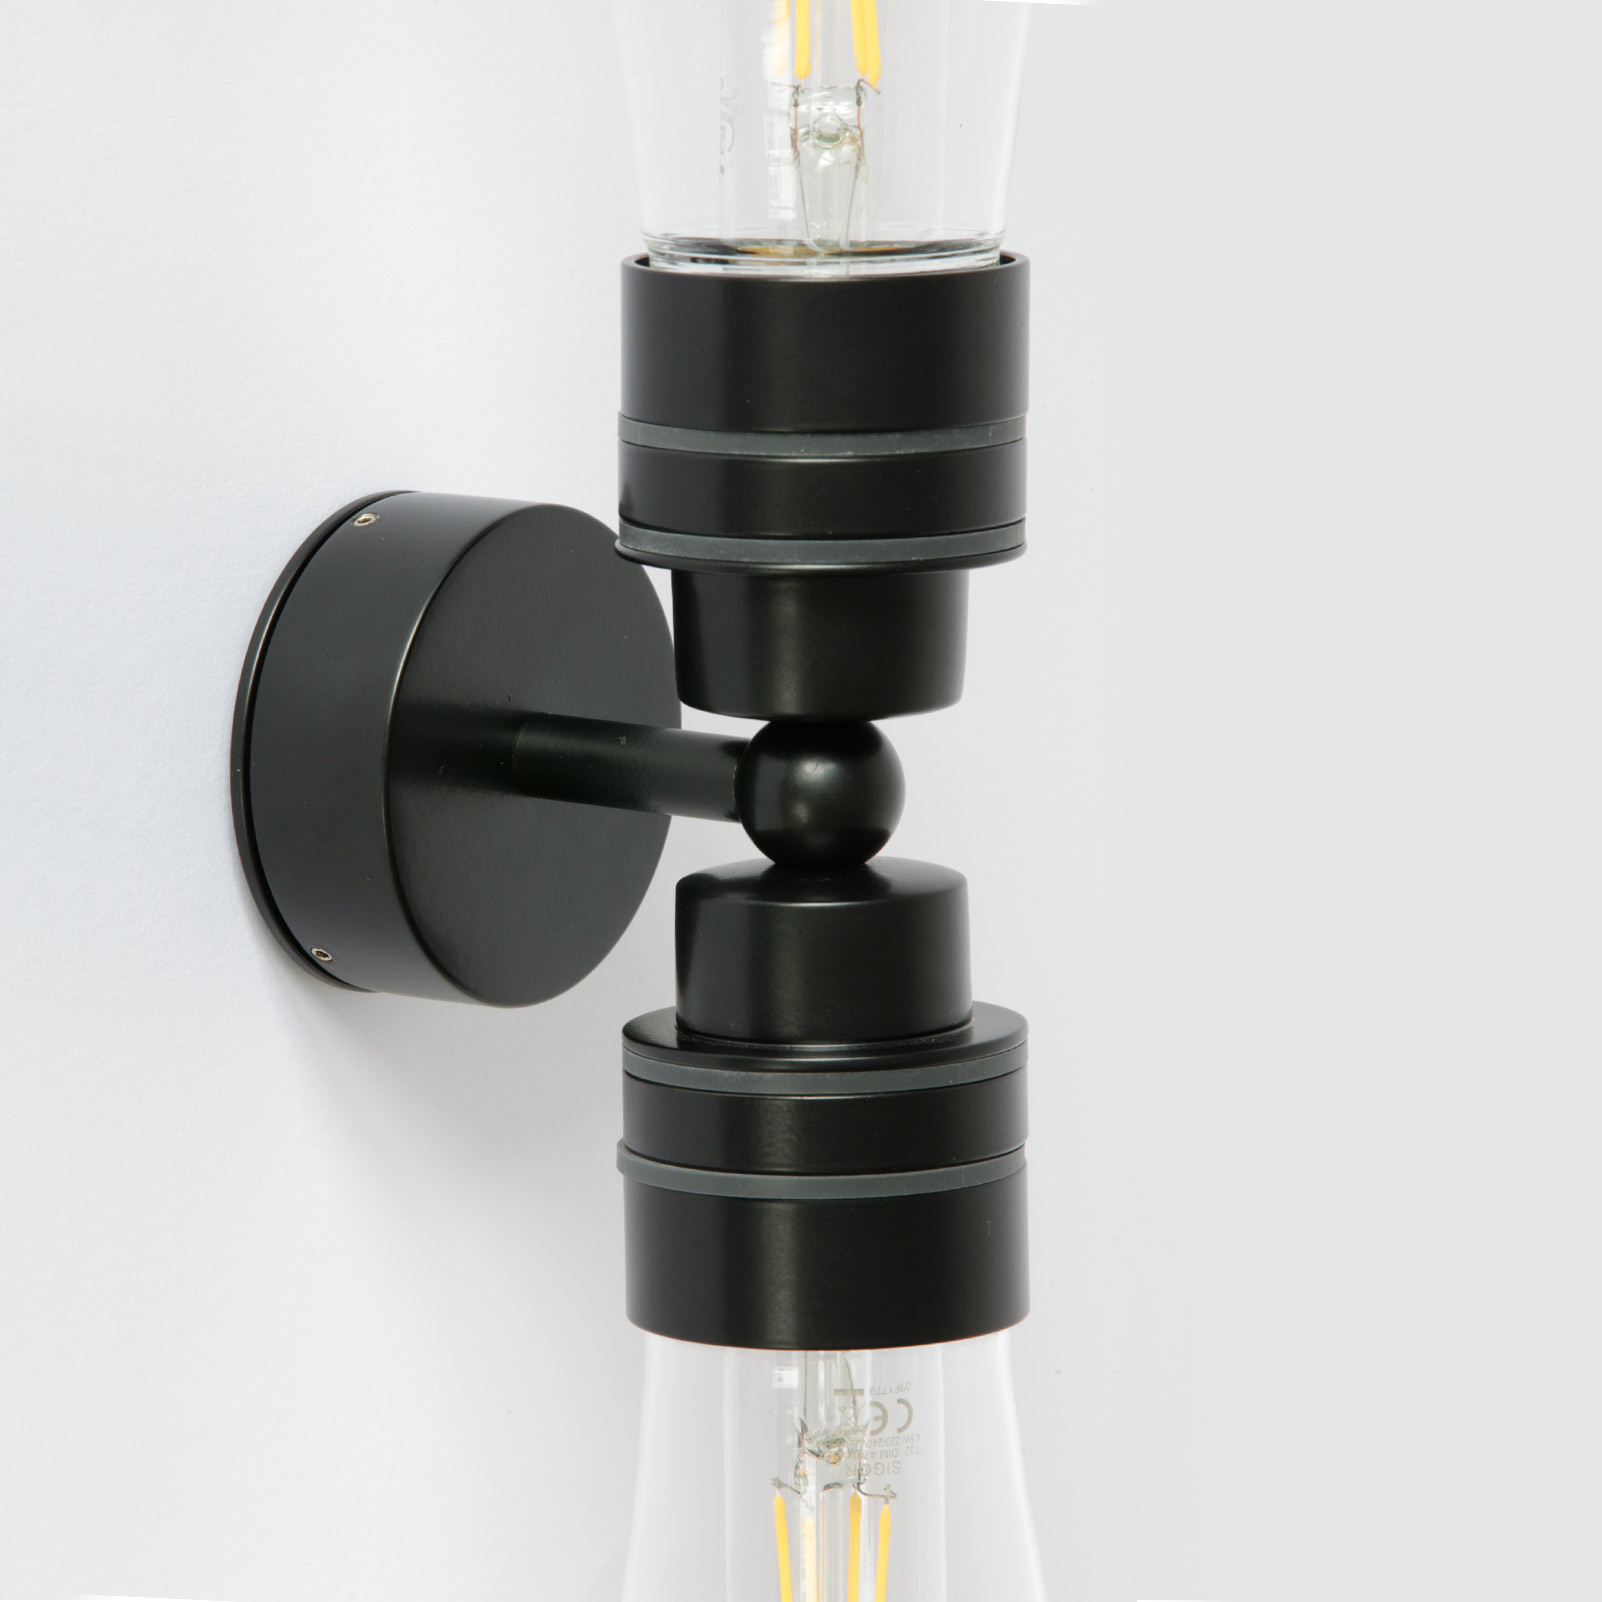 Doppel-Badezimmer-Lampe mit IP65-Glaskolben, Wand oder Decke: Neues, kleineres Wandteil mit 7,5 cm Durchmesser